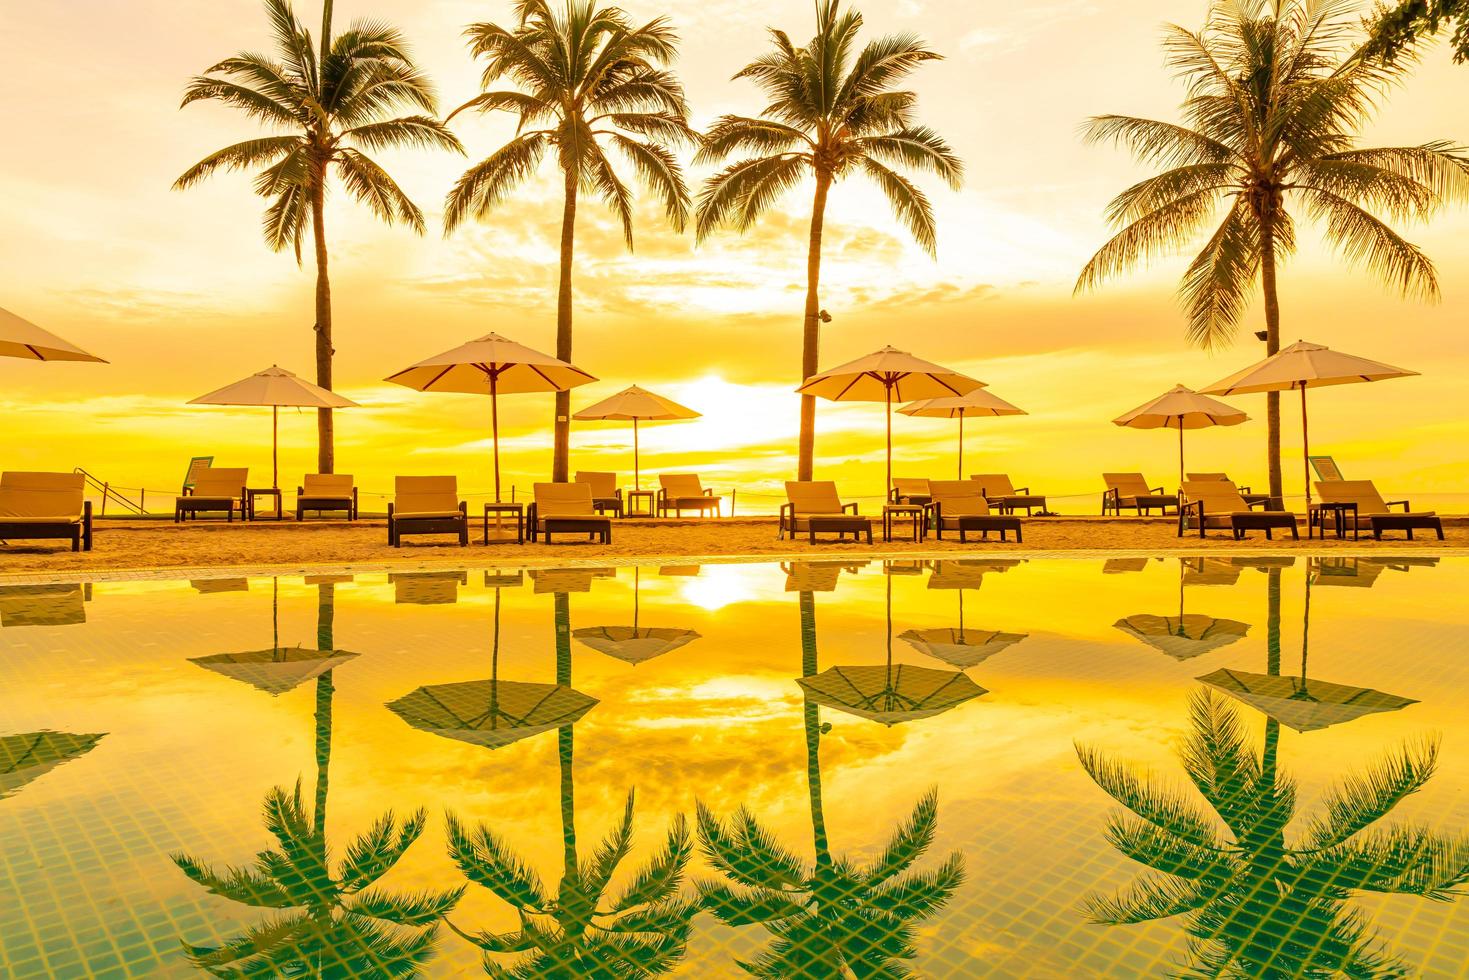 ombrellone e sedia intorno alla piscina nel resort dell'hotel con l'alba al mattino foto